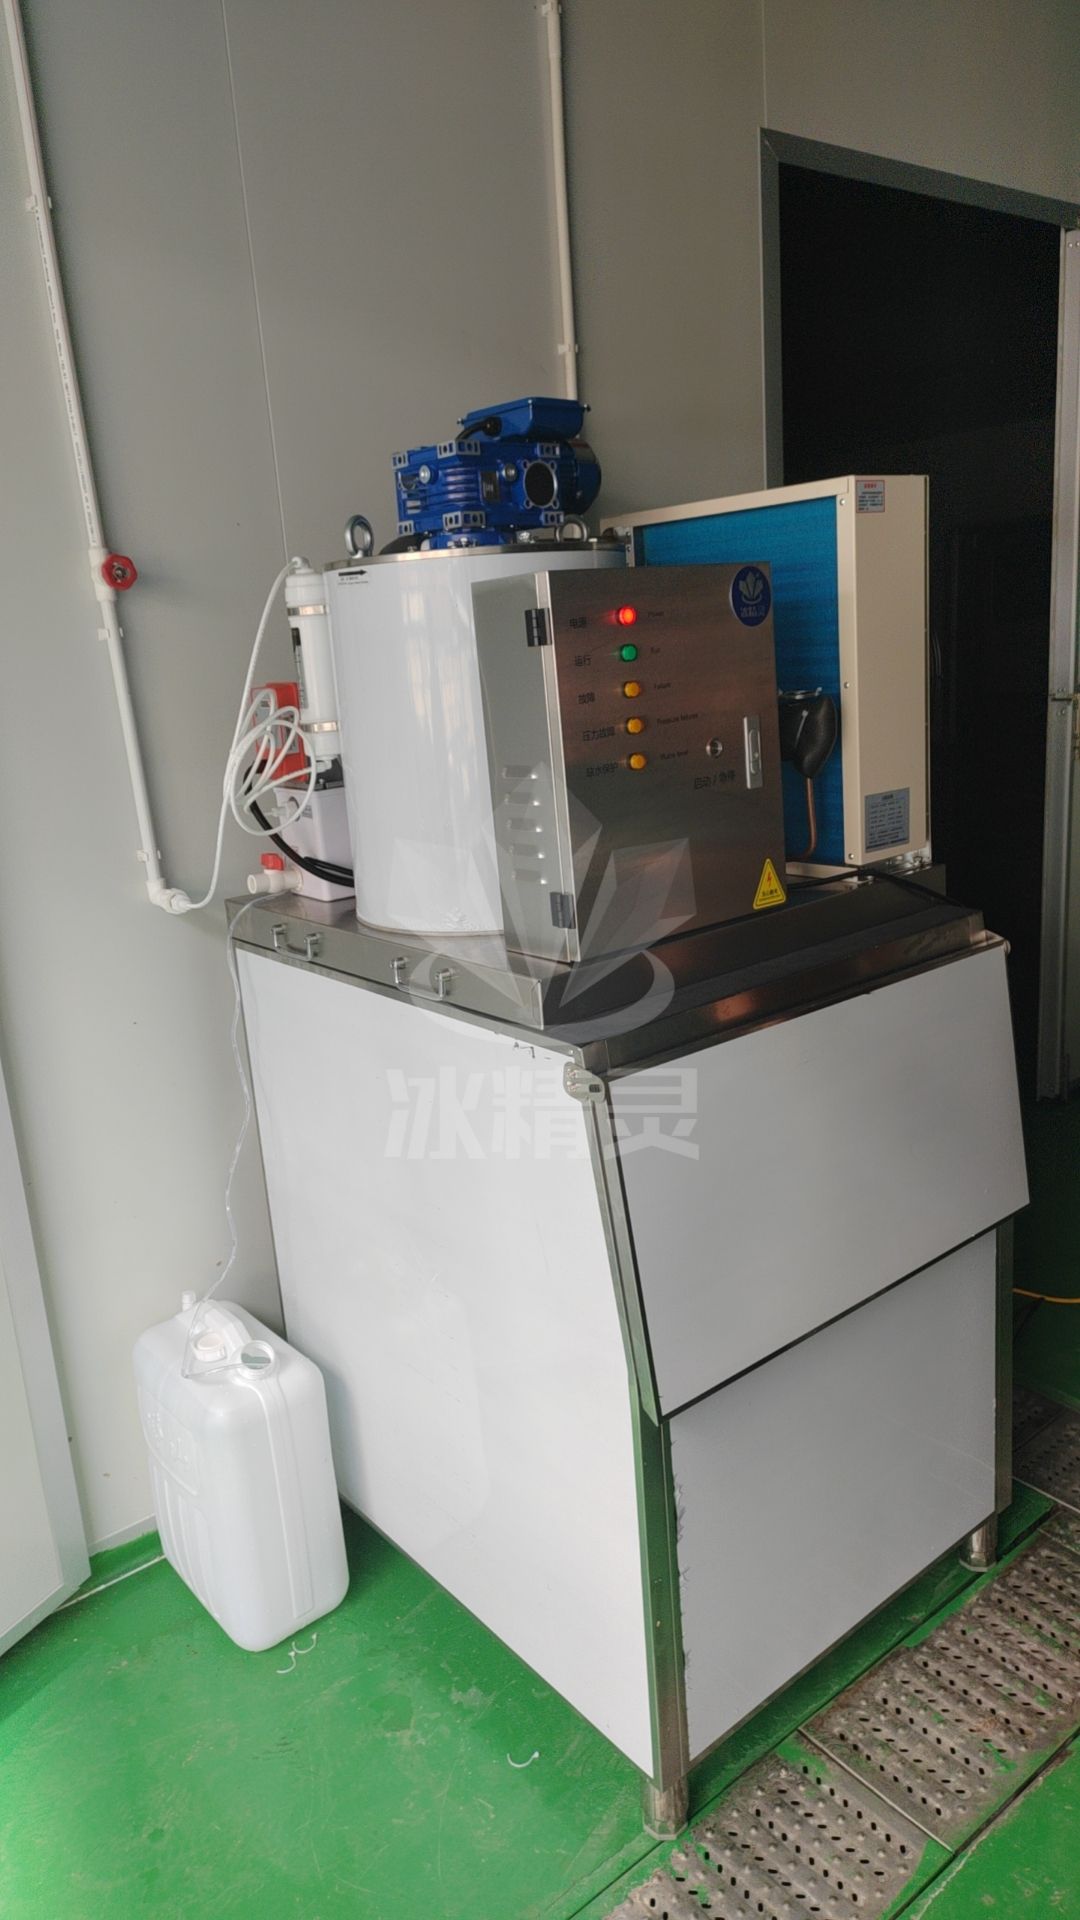 400公斤片冰机已交付福建省莆田市仙游县《向膳餐饮 》